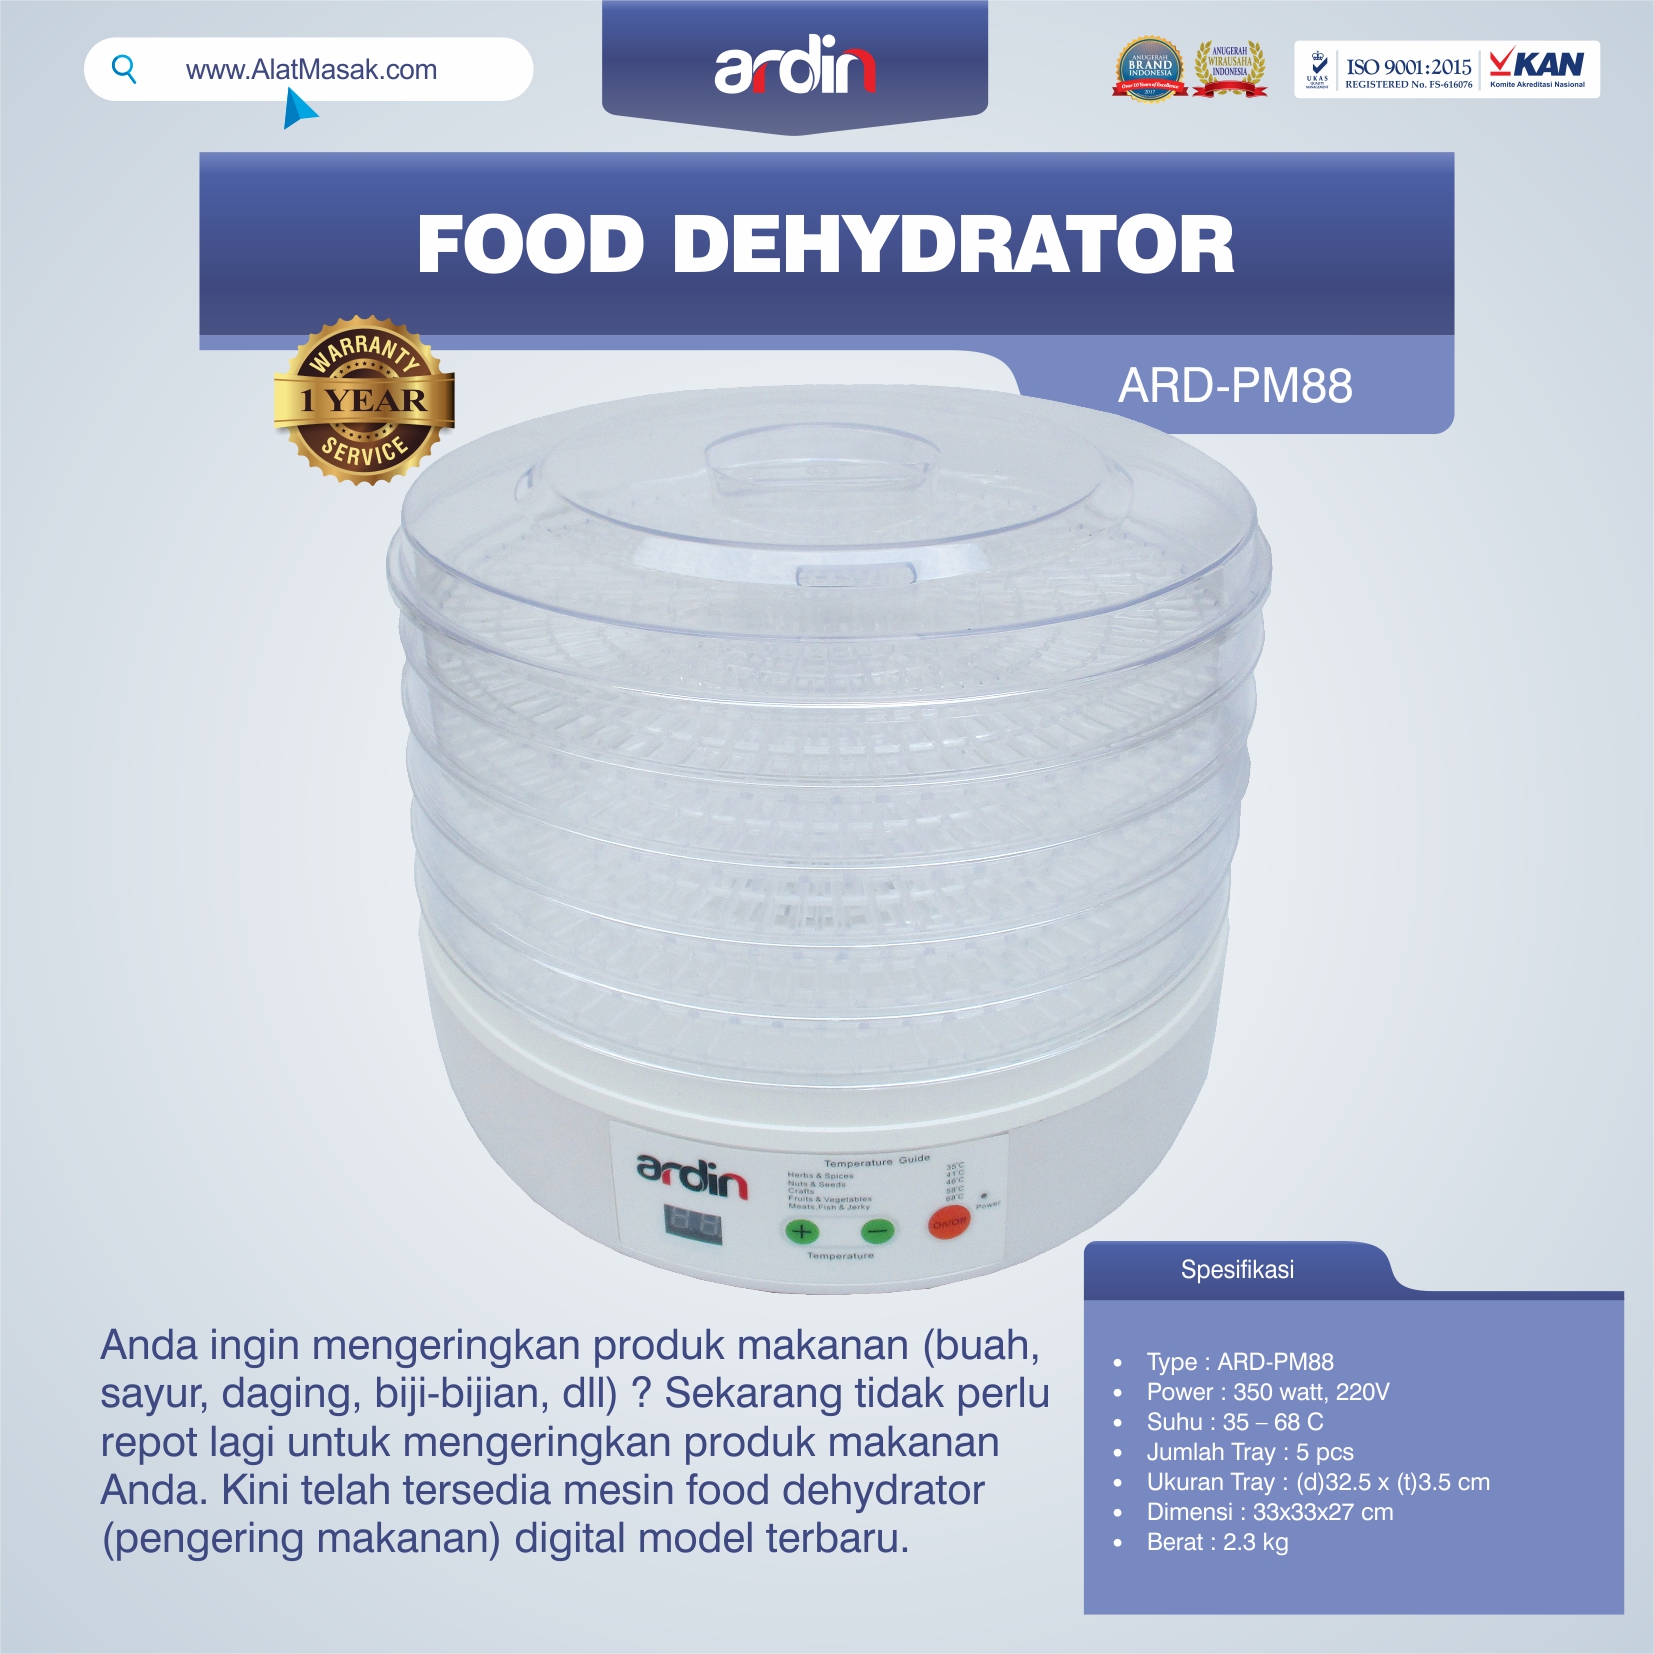 Jual Food Dehydrator ARD-PM88 di Tangerang